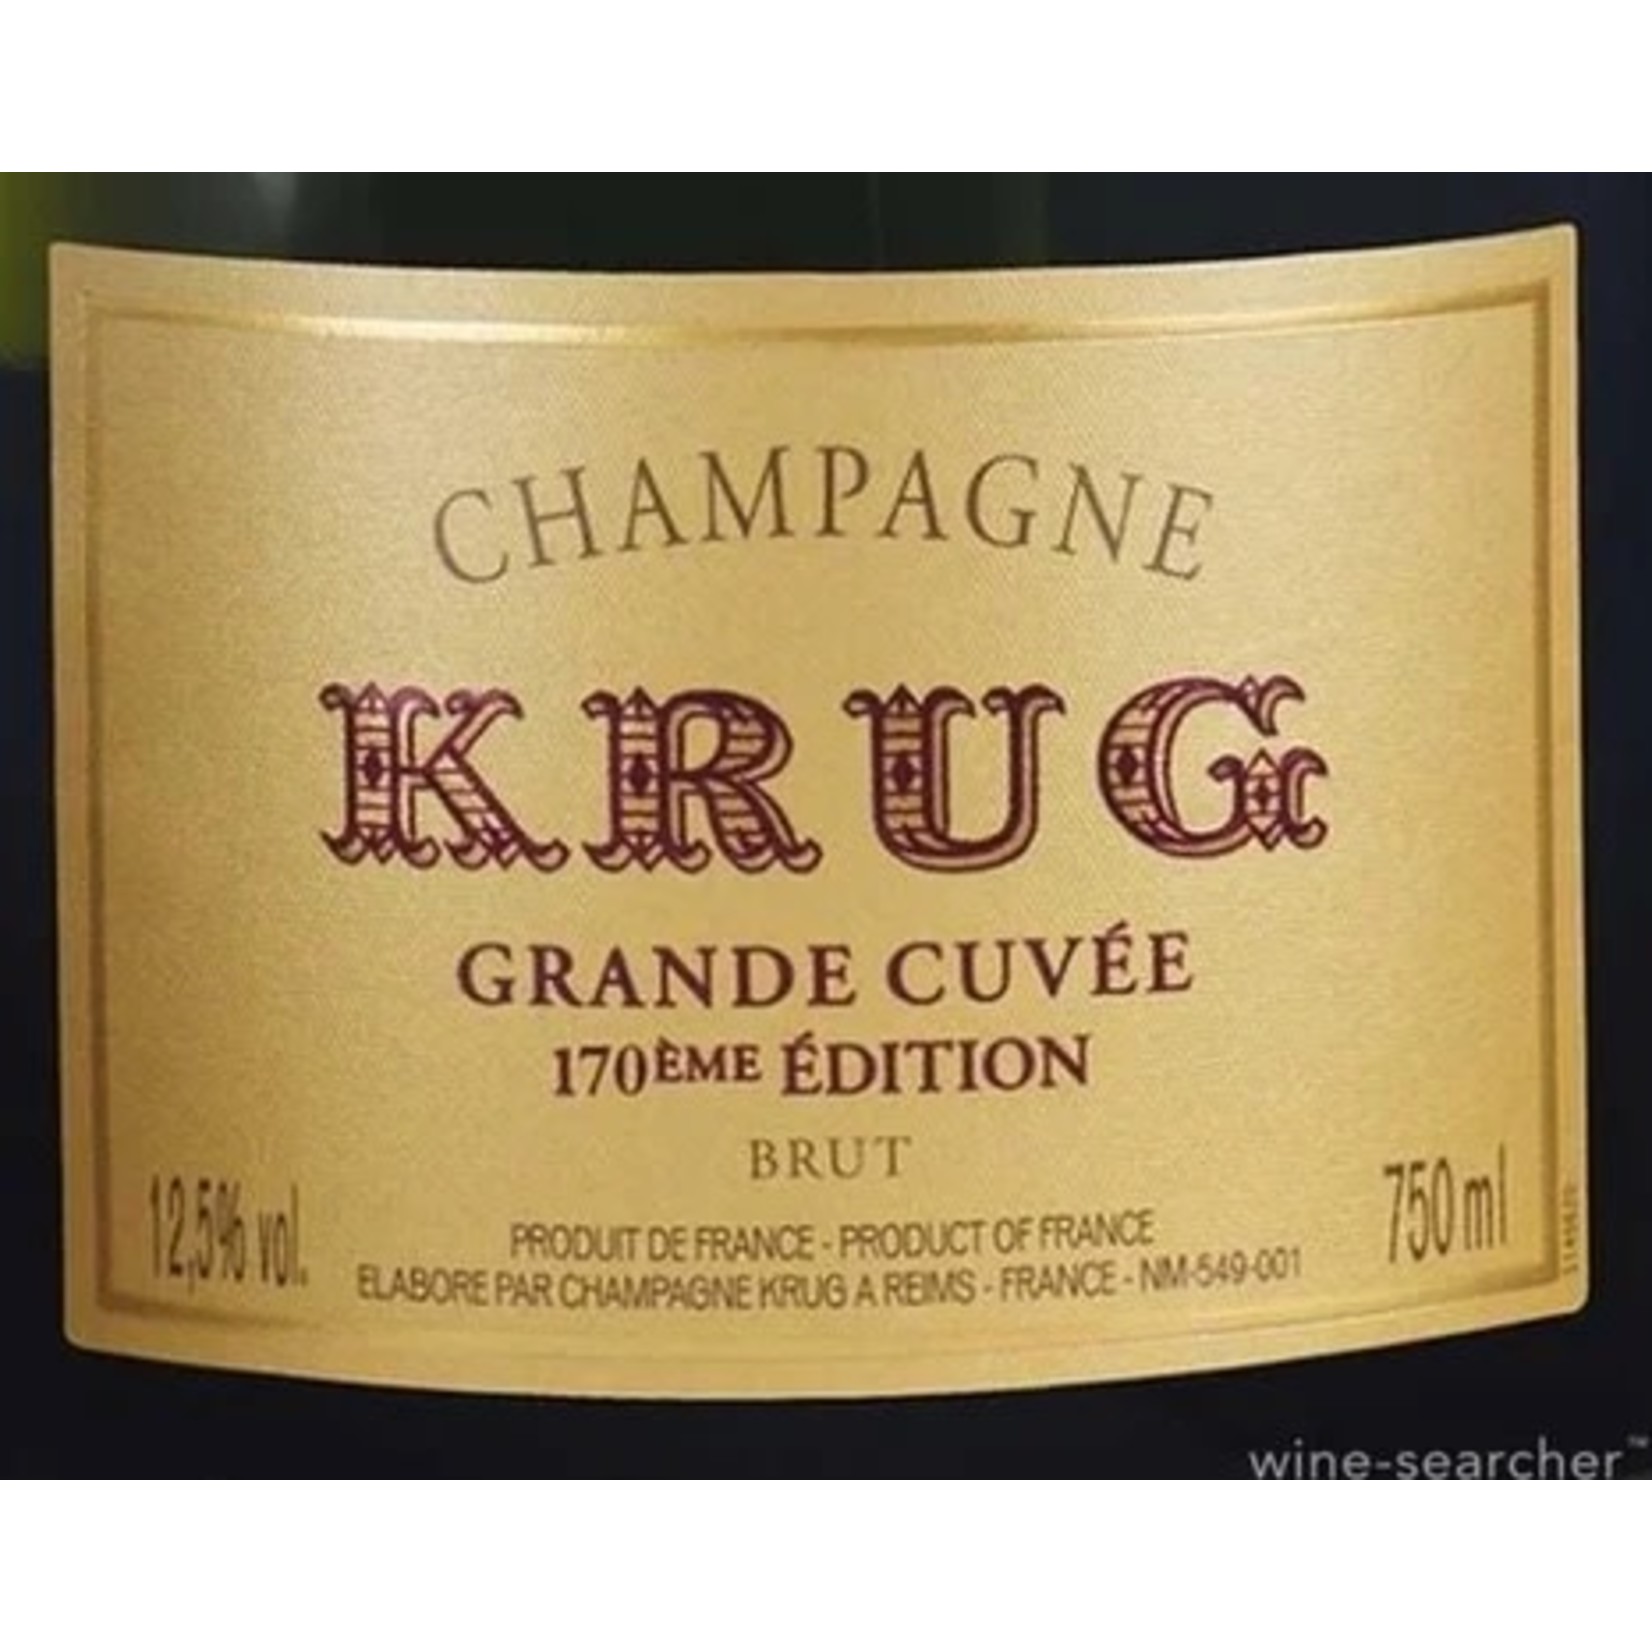 Sparkling Krug Champagne Brut Grande Cuvee 170 Edition NV